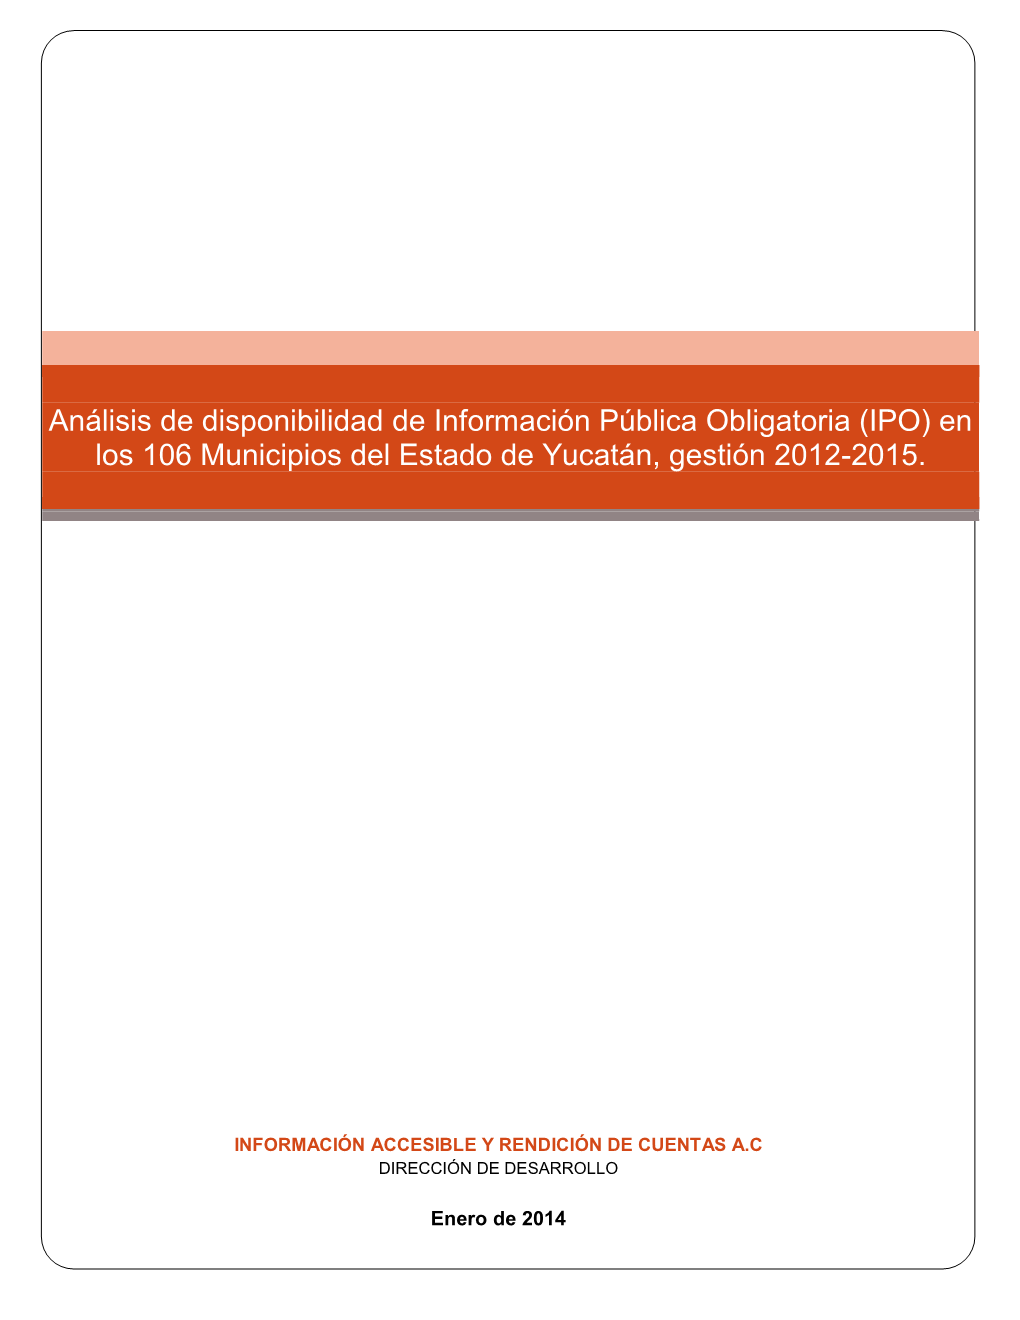 (IPO) En Los 106 Municipios Del Estado De Yucatán, Gestión 2012-2015